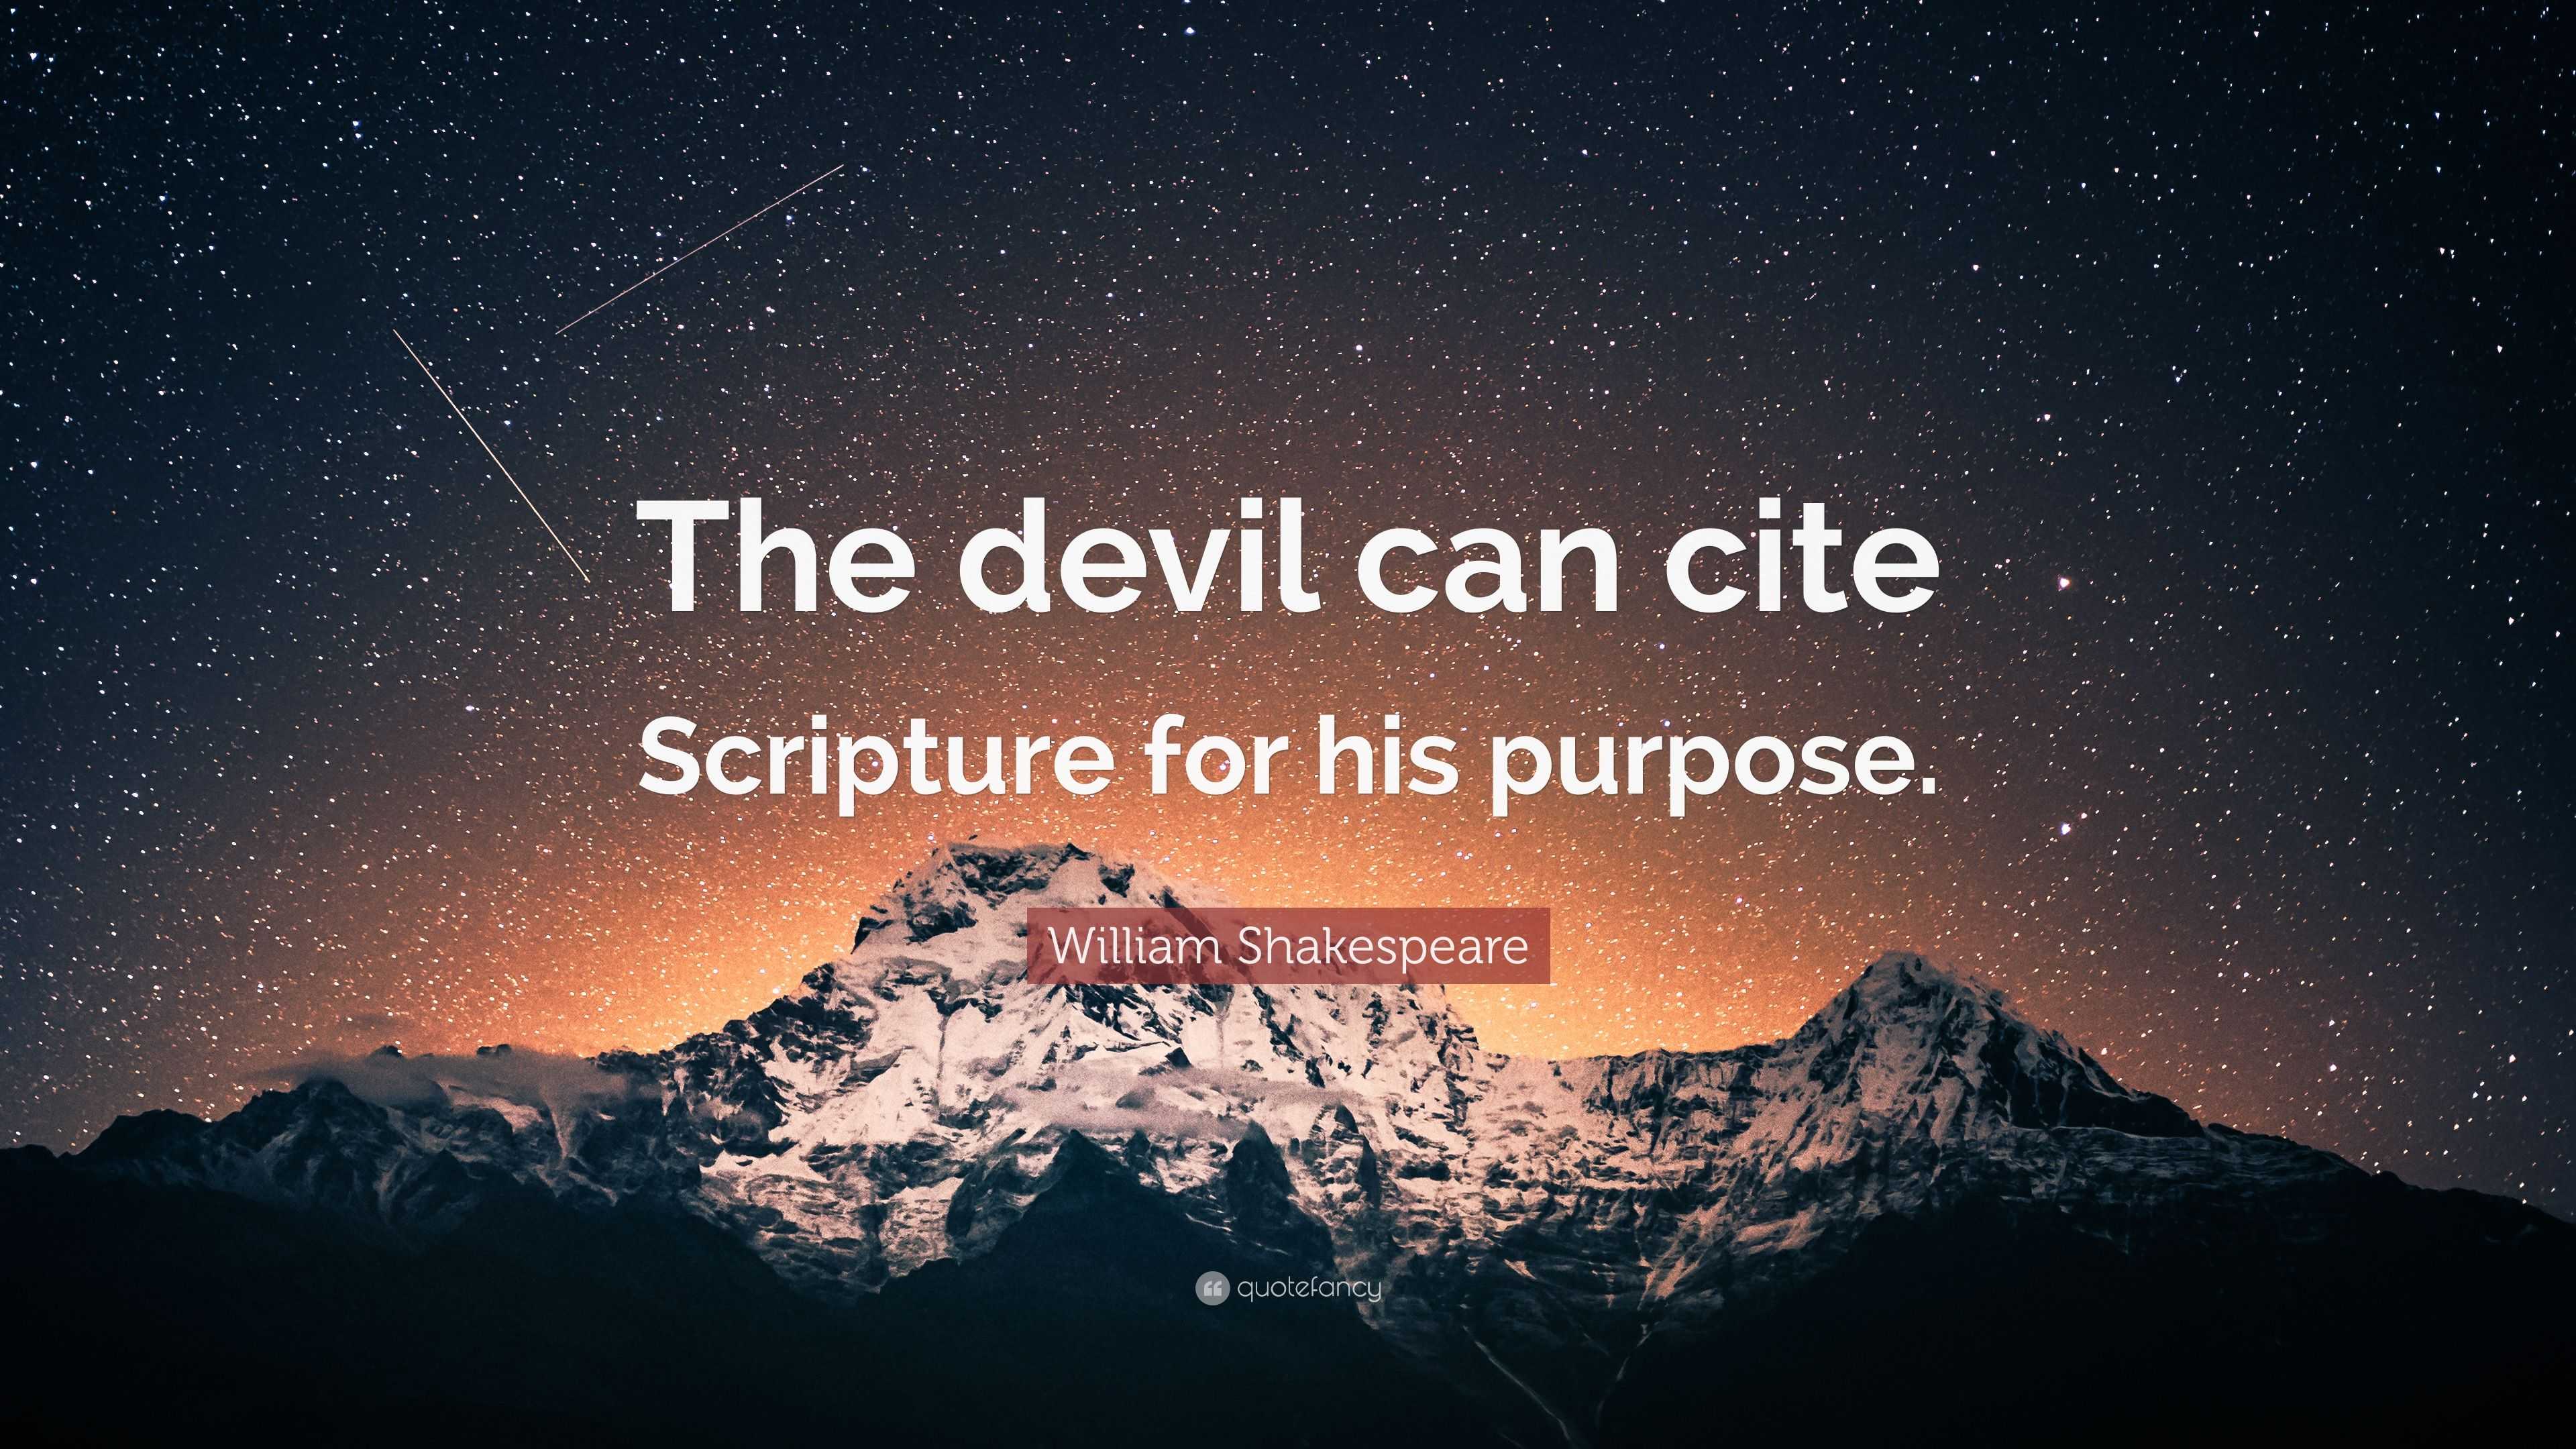 William Shakespeare Quote: "The devil can cite Scripture ...